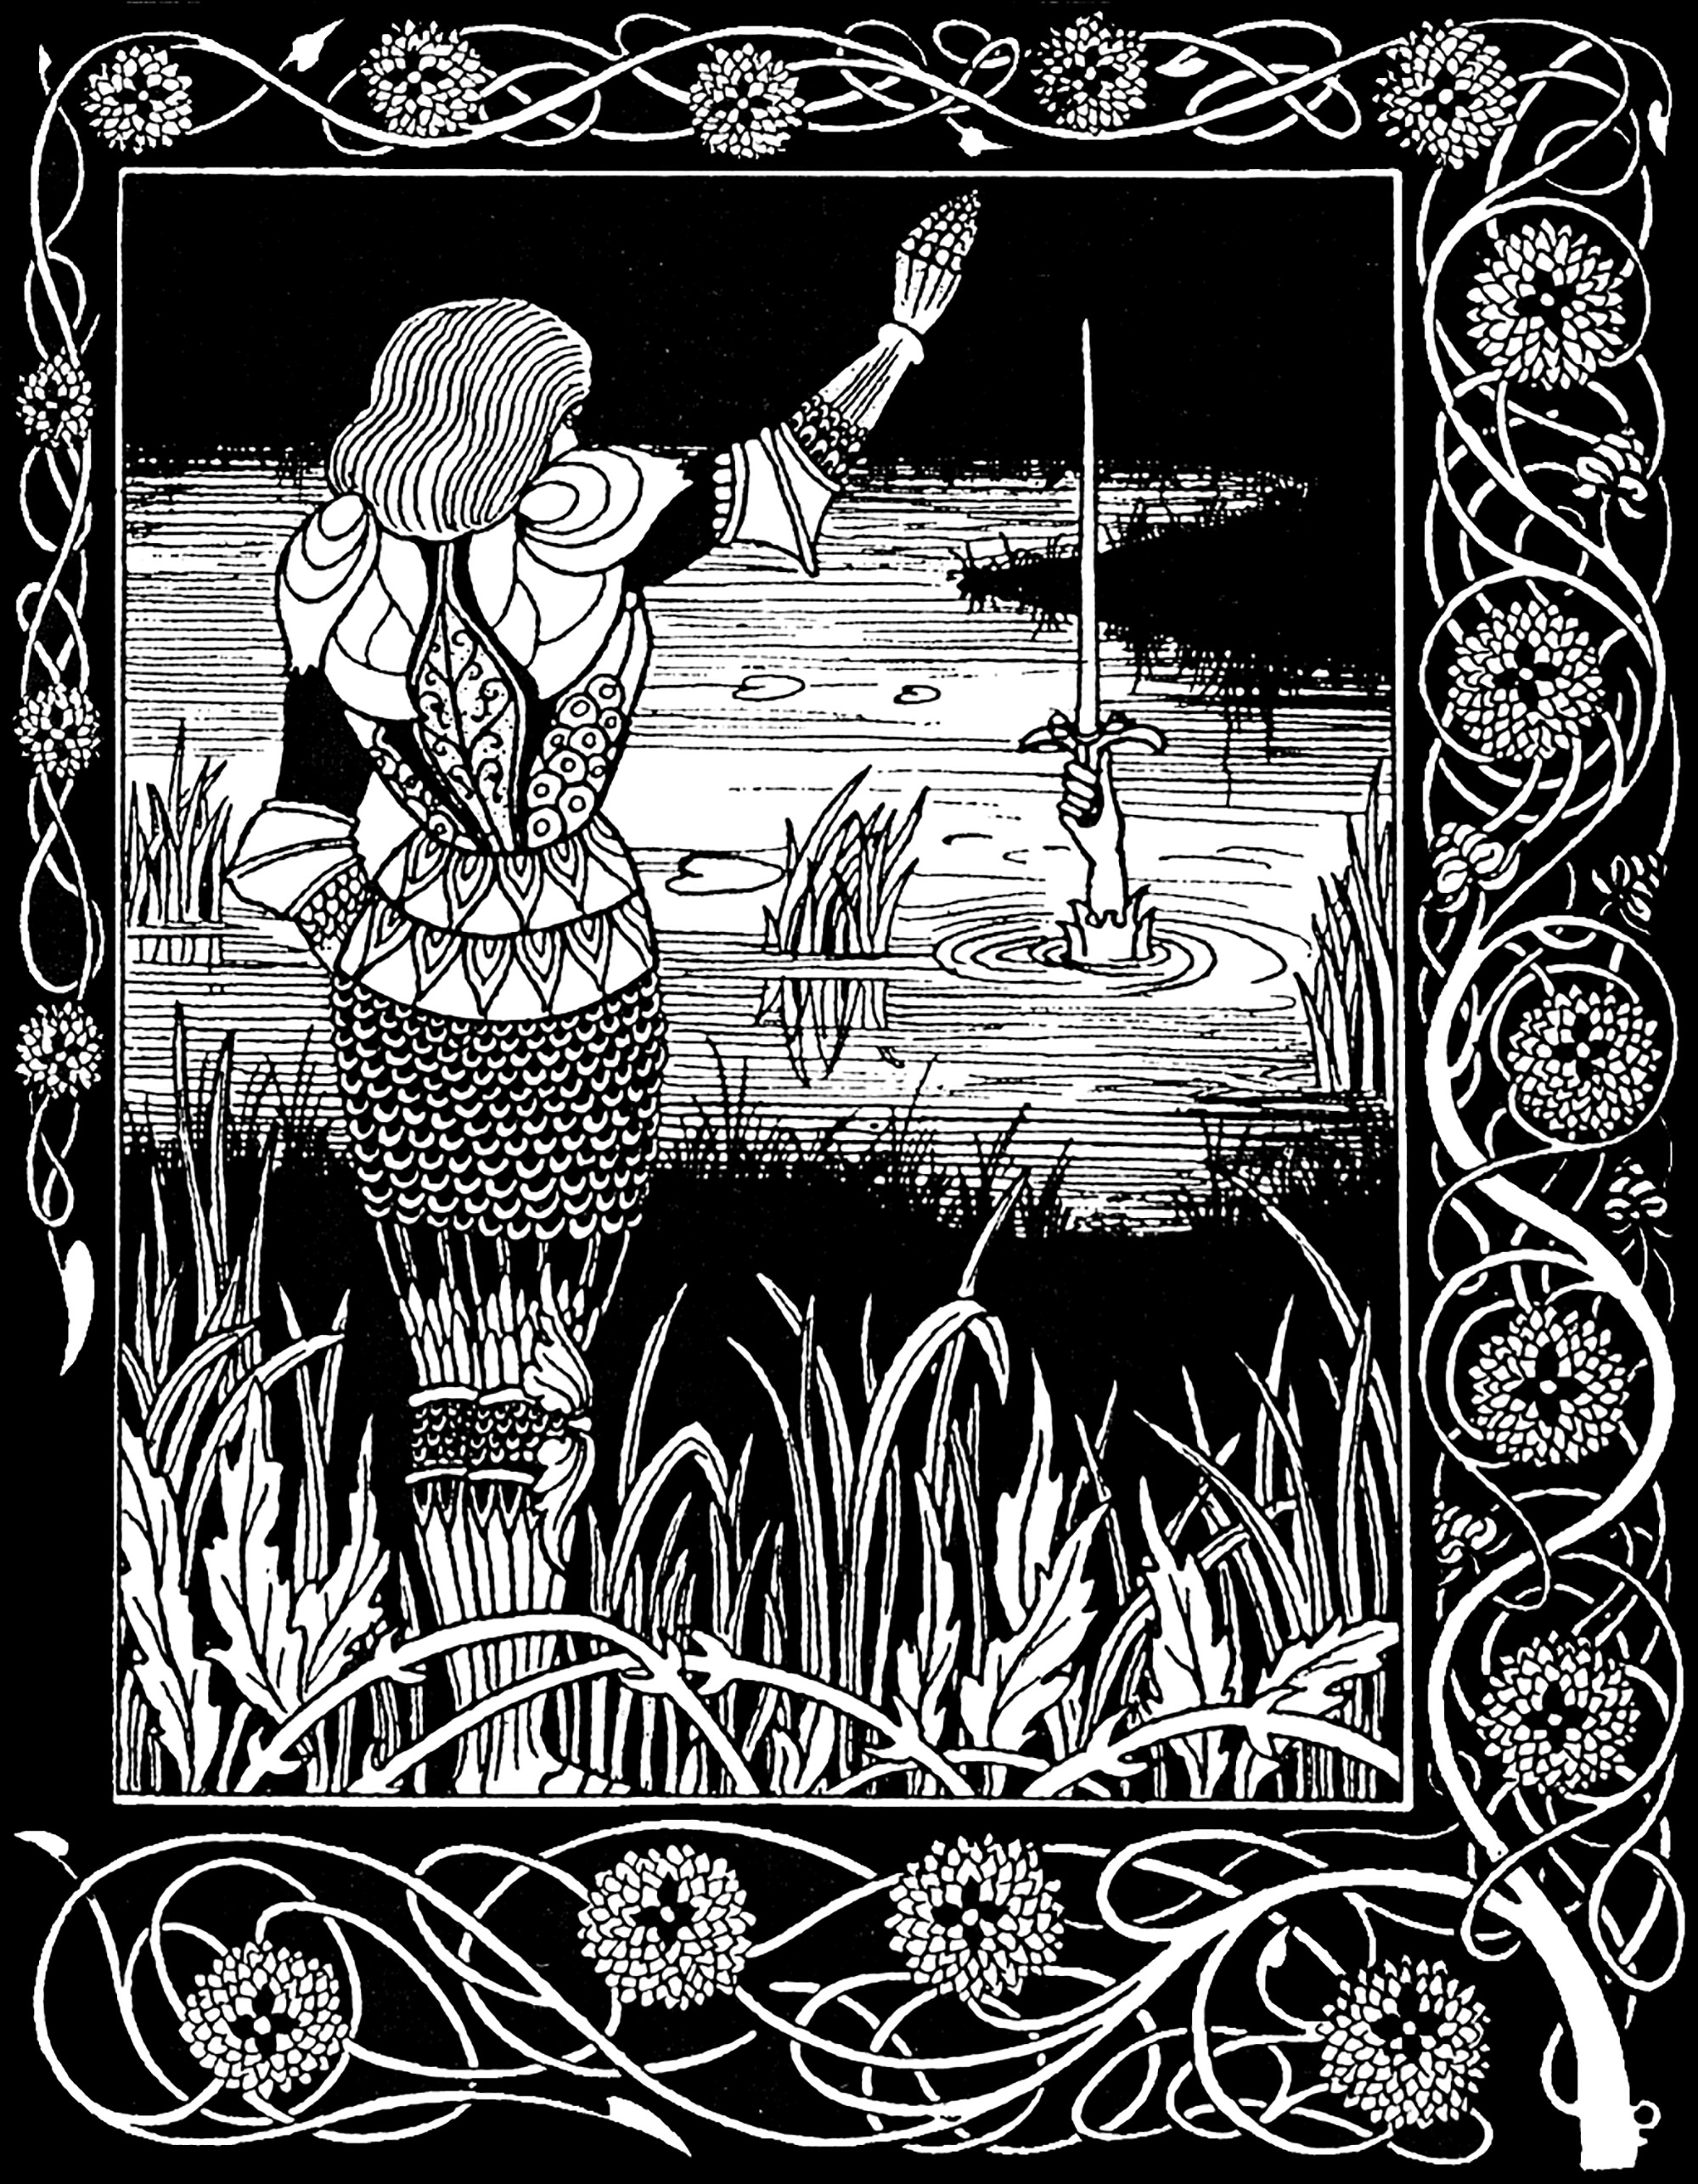 Sir Bedivere arroja Excalibur, la espada de Arturo, al lago de donde salió. Ilustración de Aubrey Beardsley (1872-1898) para una edición de La Mort d'Arthur de Sir Thomas Malory (1893).